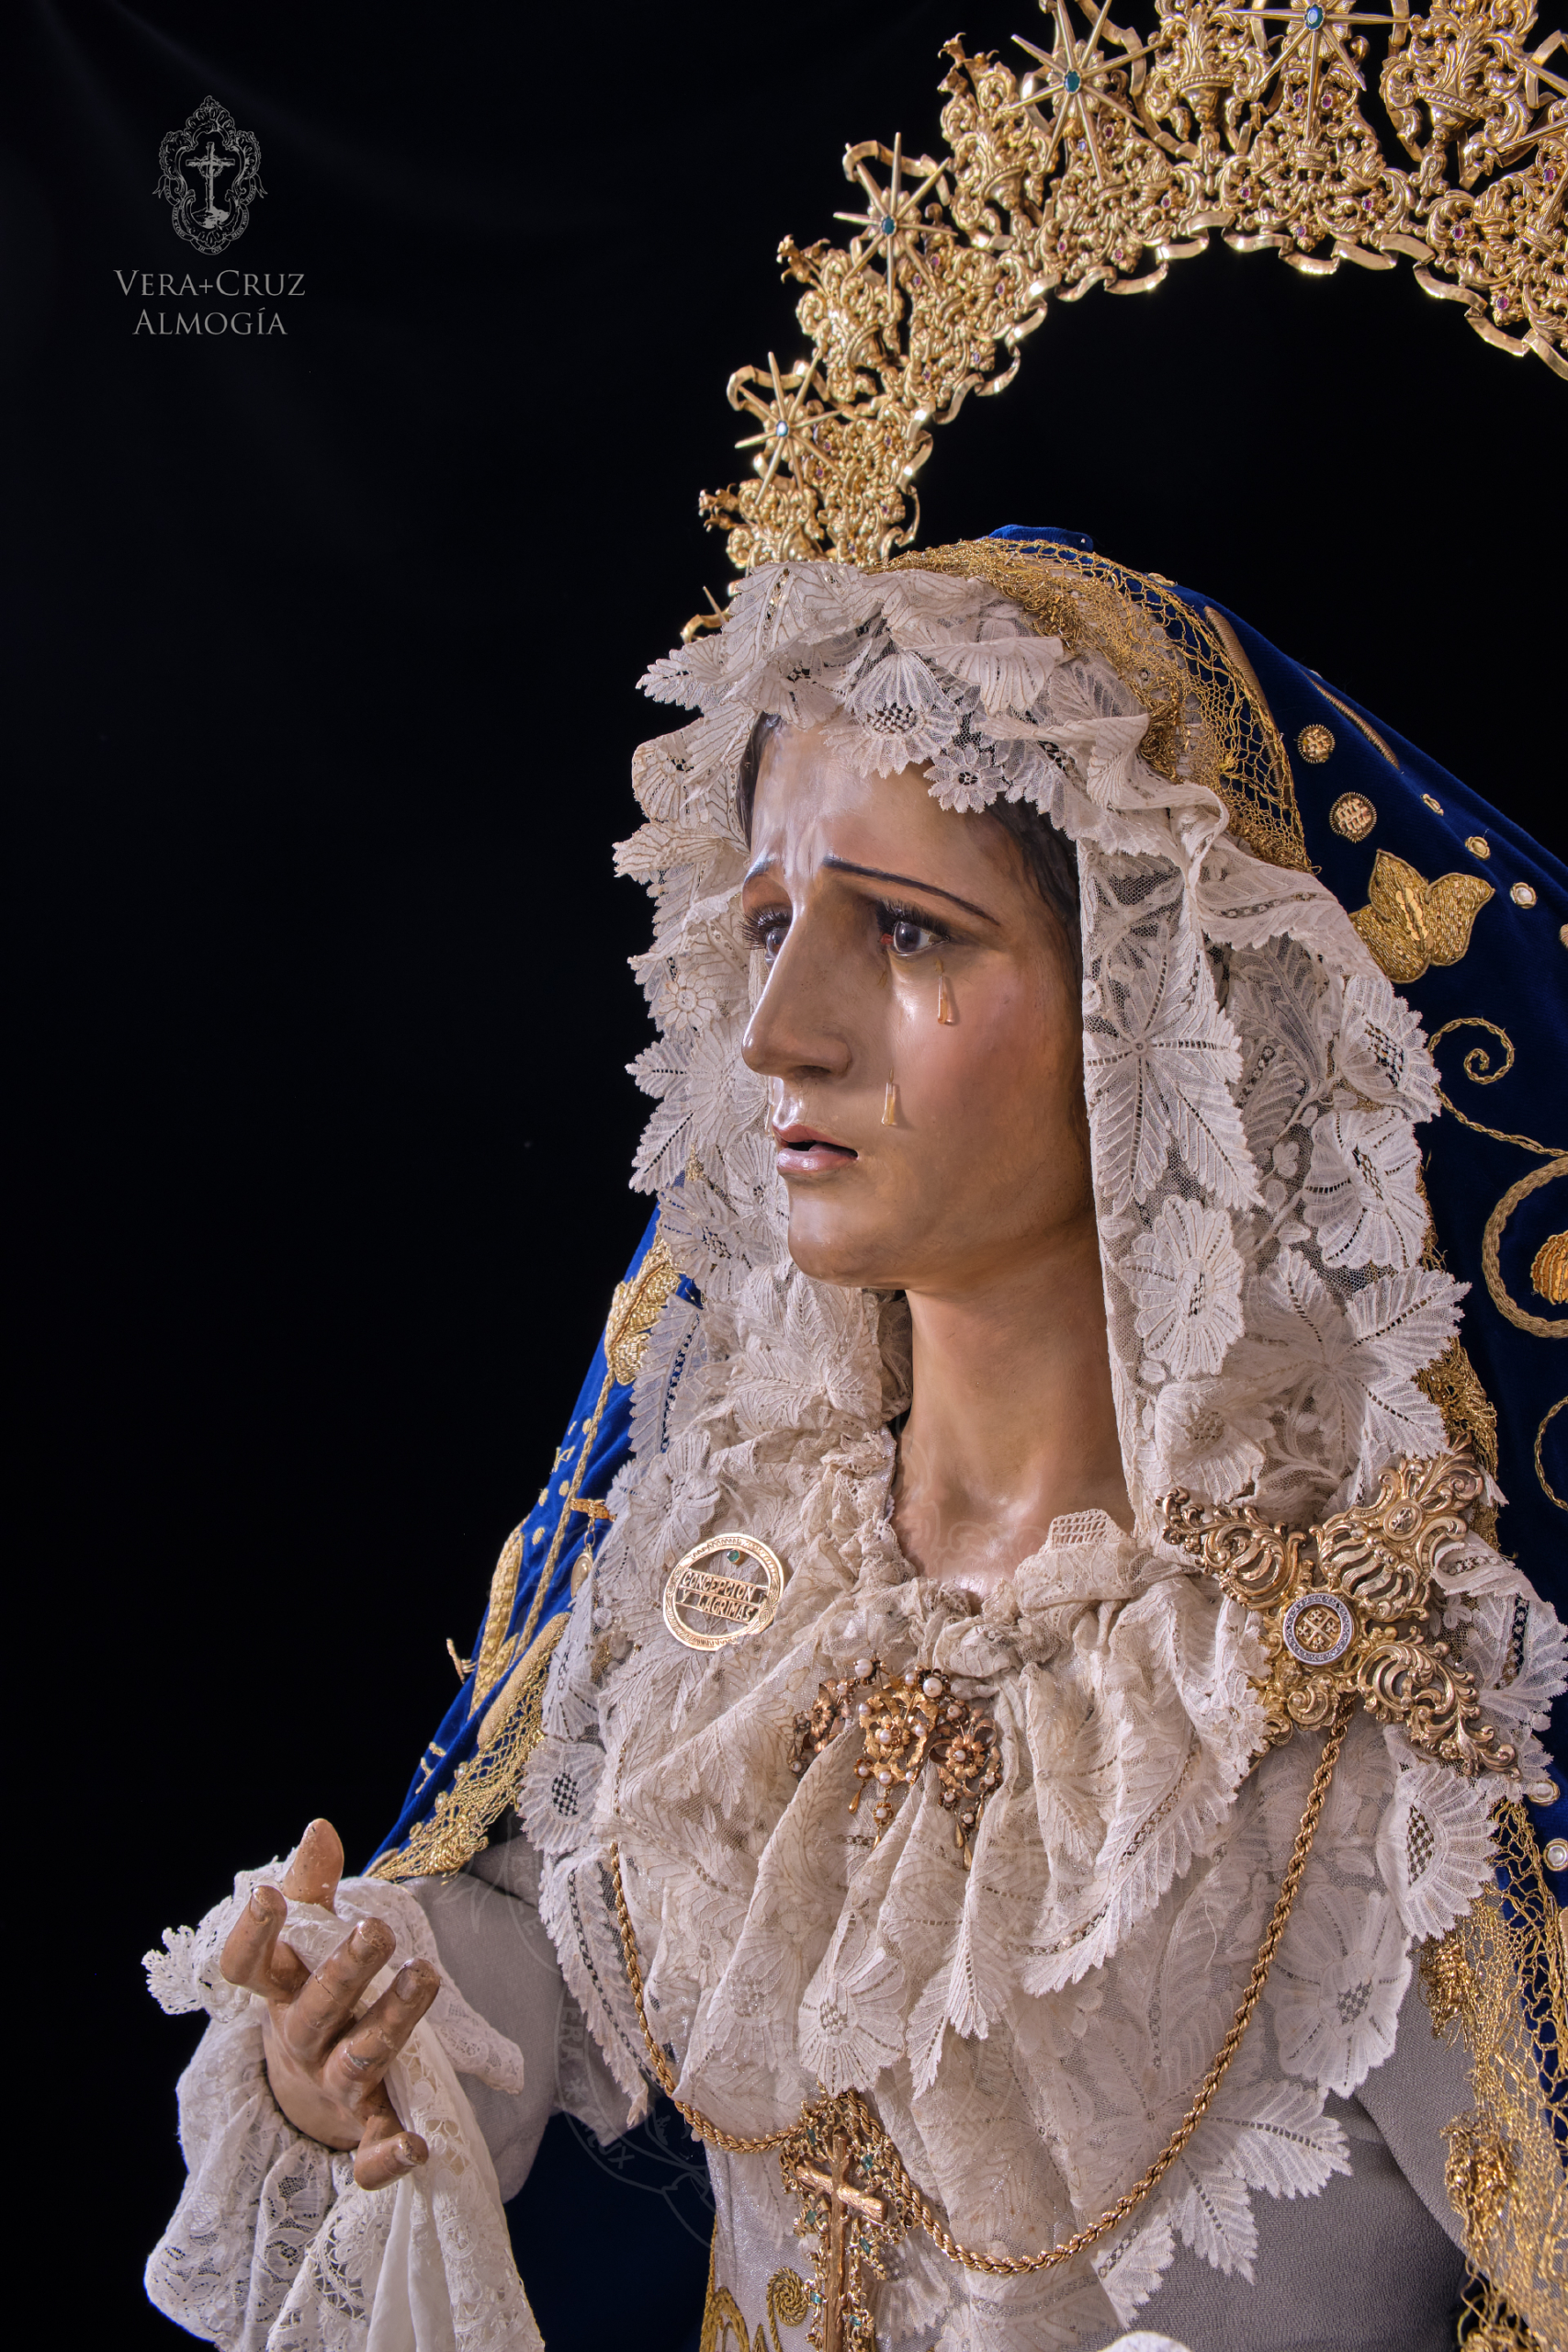 María Santísima de Concepción y Lágrimas